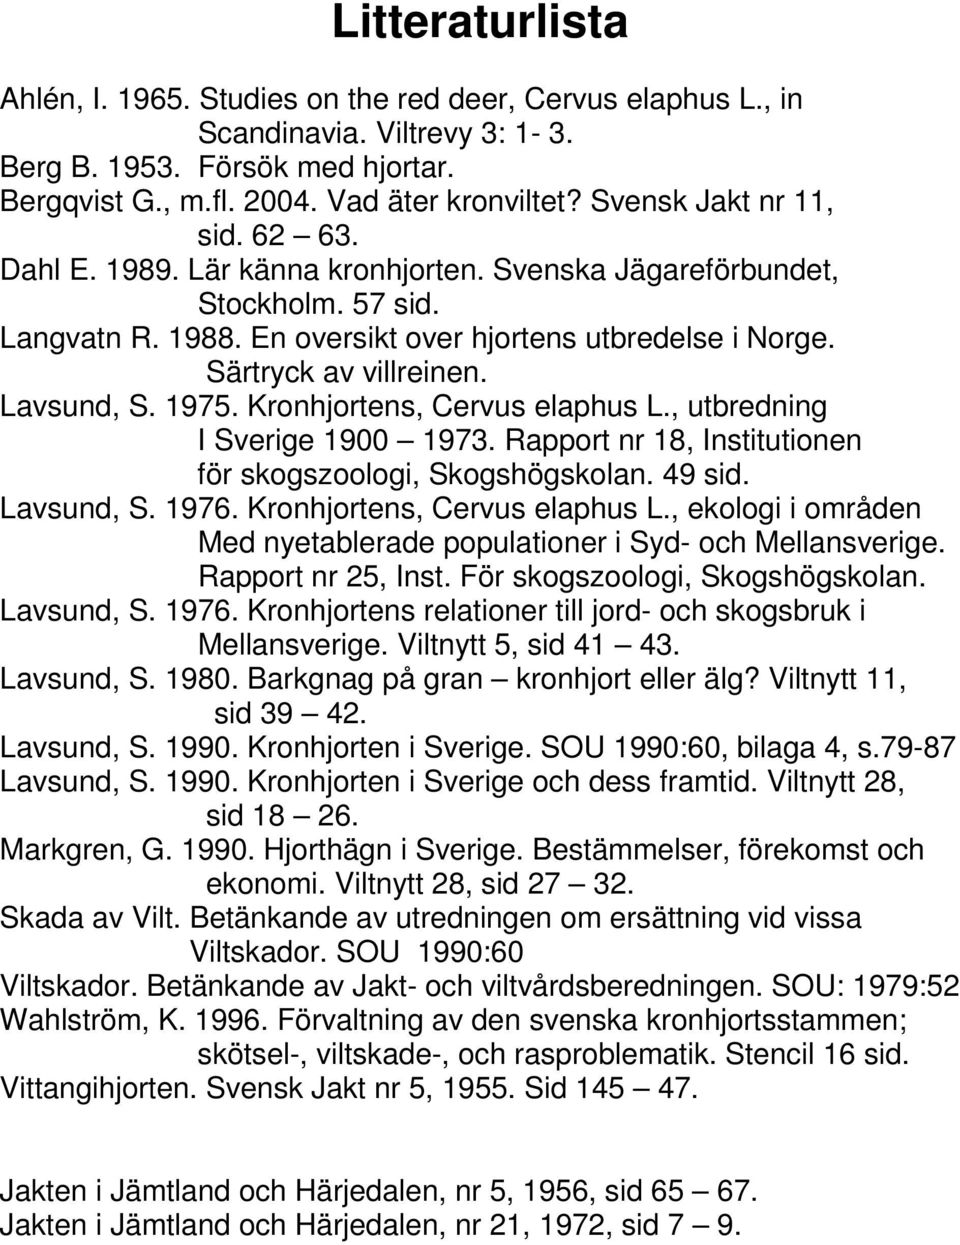 Lavsund, S. 1975. Kronhjortens, Cervus elaphus L., utbredning I Sverige 1900 1973. Rapport nr 18, Institutionen för skogszoologi, Skogshögskolan. 49 sid. Lavsund, S. 1976.